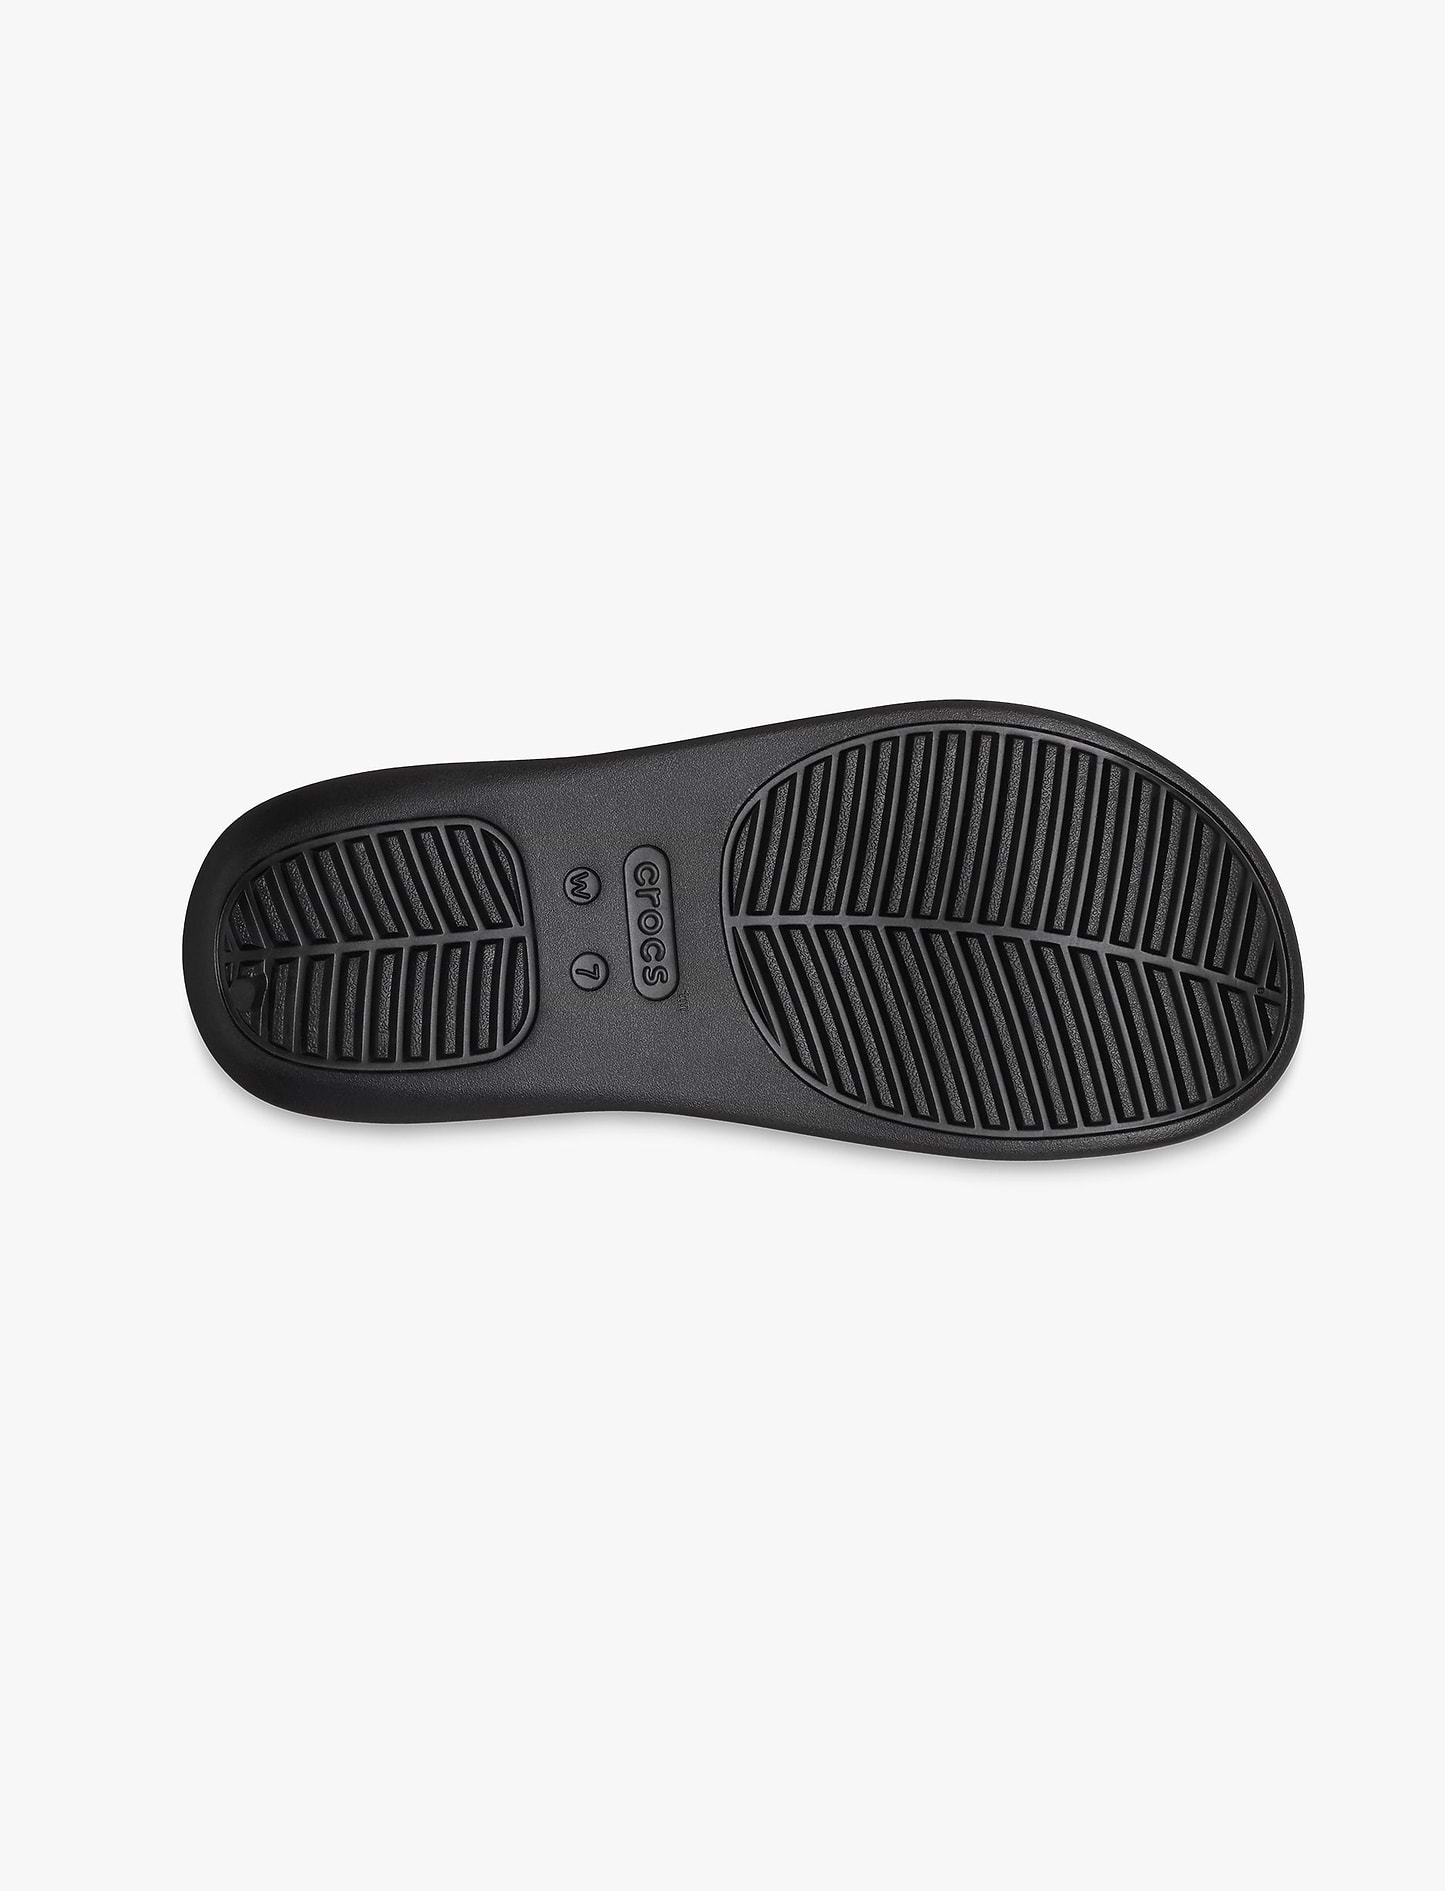 Crocs Getaway Flip - כפכפי אצבע קרוקס לנשים בצבע שחור